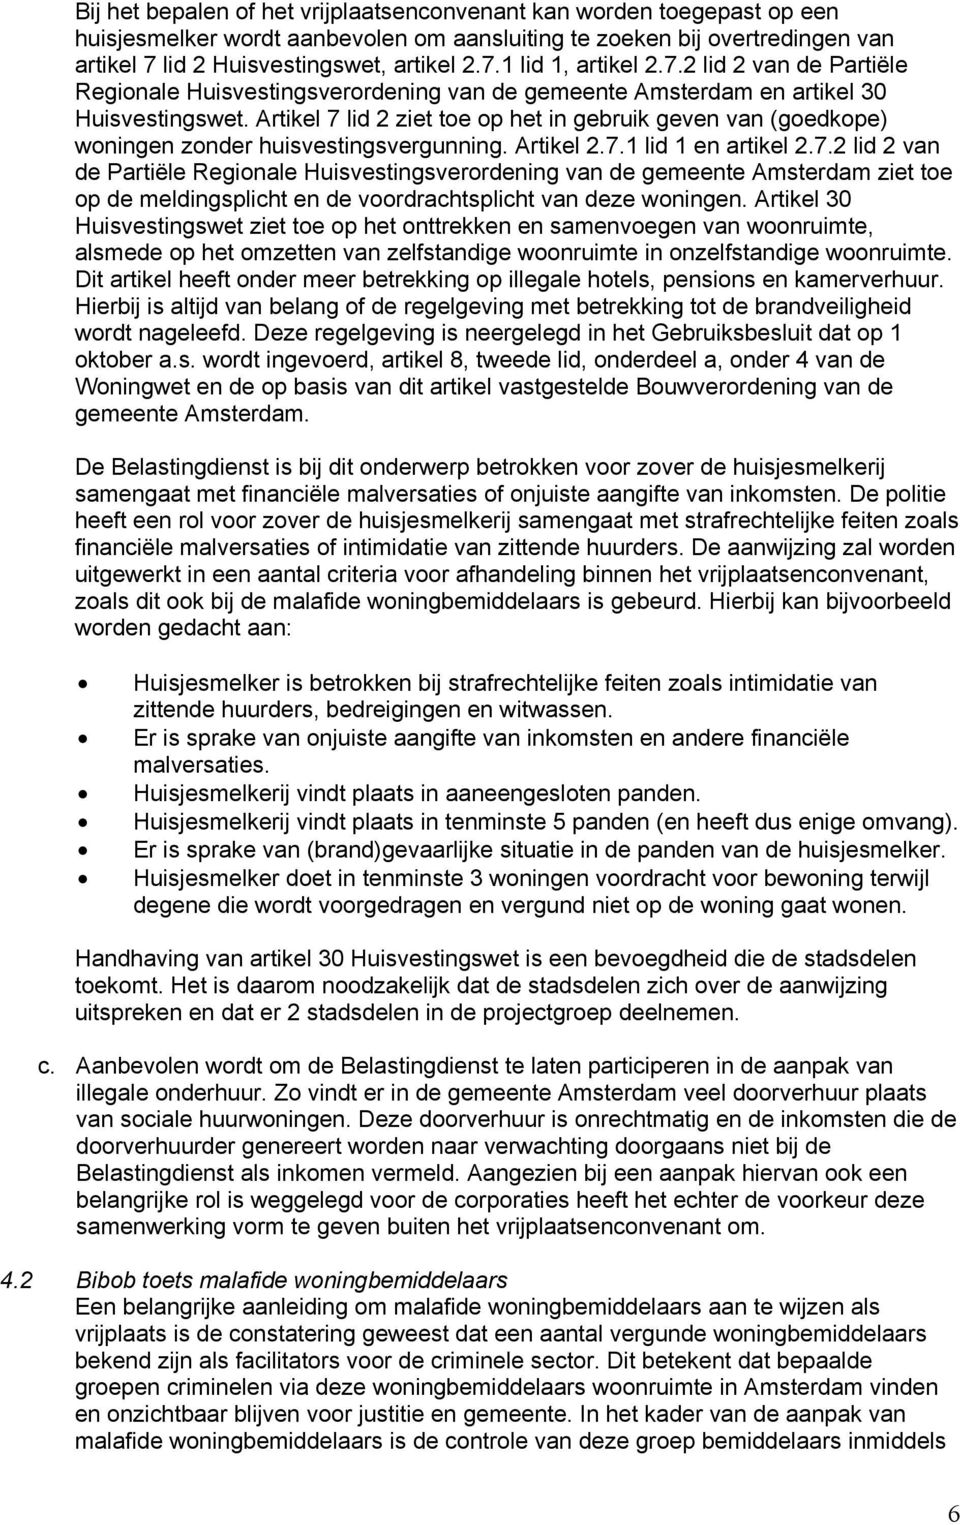 Artikel 7 lid 2 ziet toe op het in gebruik geven van (goedkope) woningen zonder huisvestingsvergunning. Artikel 2.7.1 lid 1 en artikel 2.7.2 lid 2 van de Partiële Regionale Huisvestingsverordening van de gemeente Amsterdam ziet toe op de meldingsplicht en de voordrachtsplicht van deze woningen.